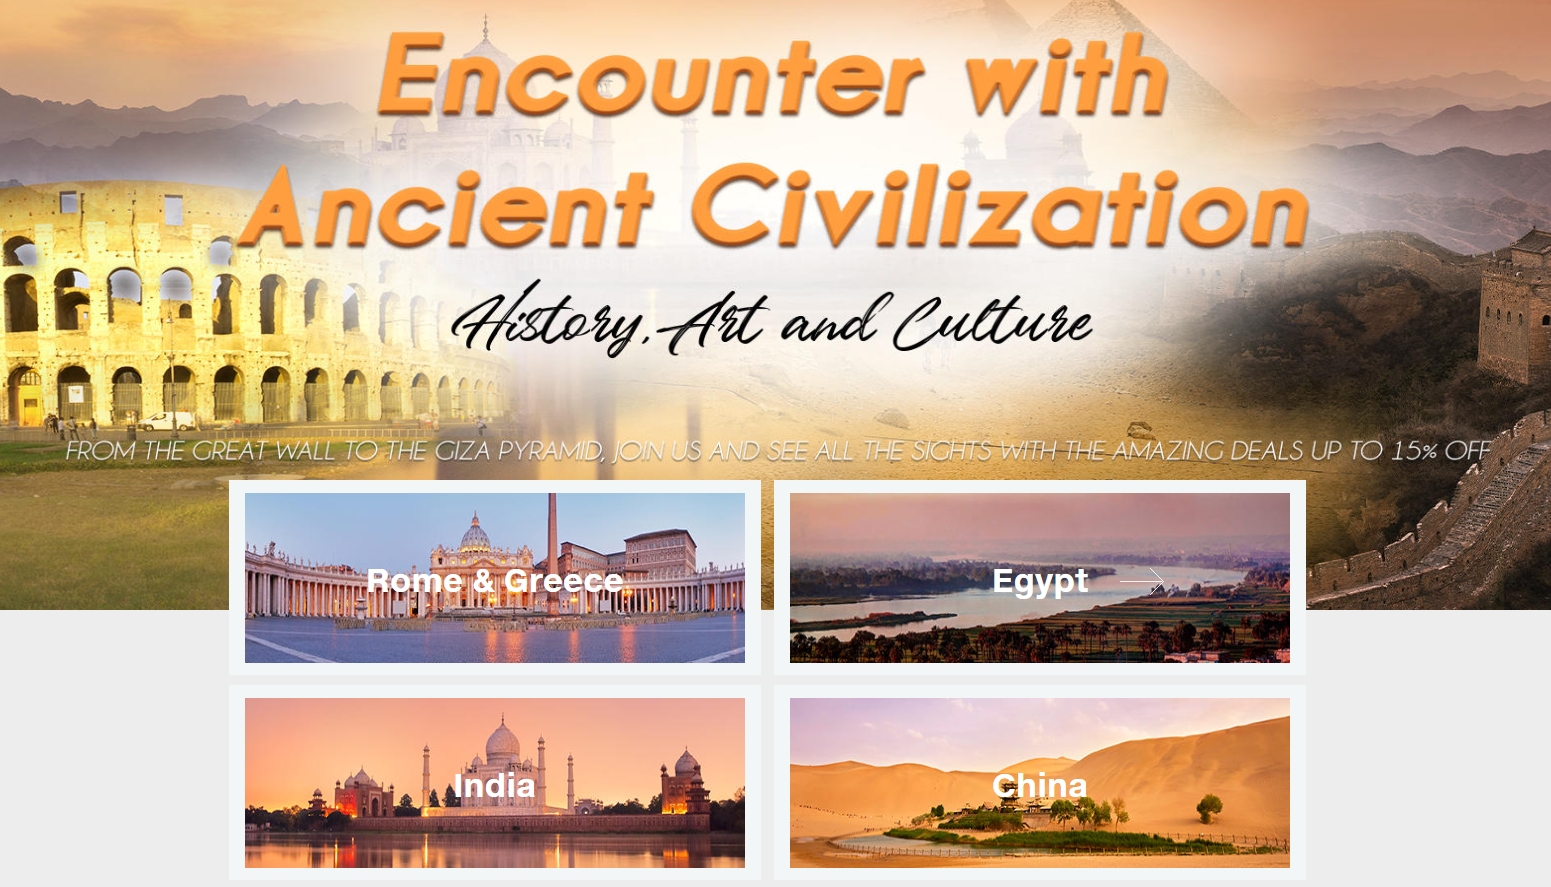 Ancient Civilization Tour Packages